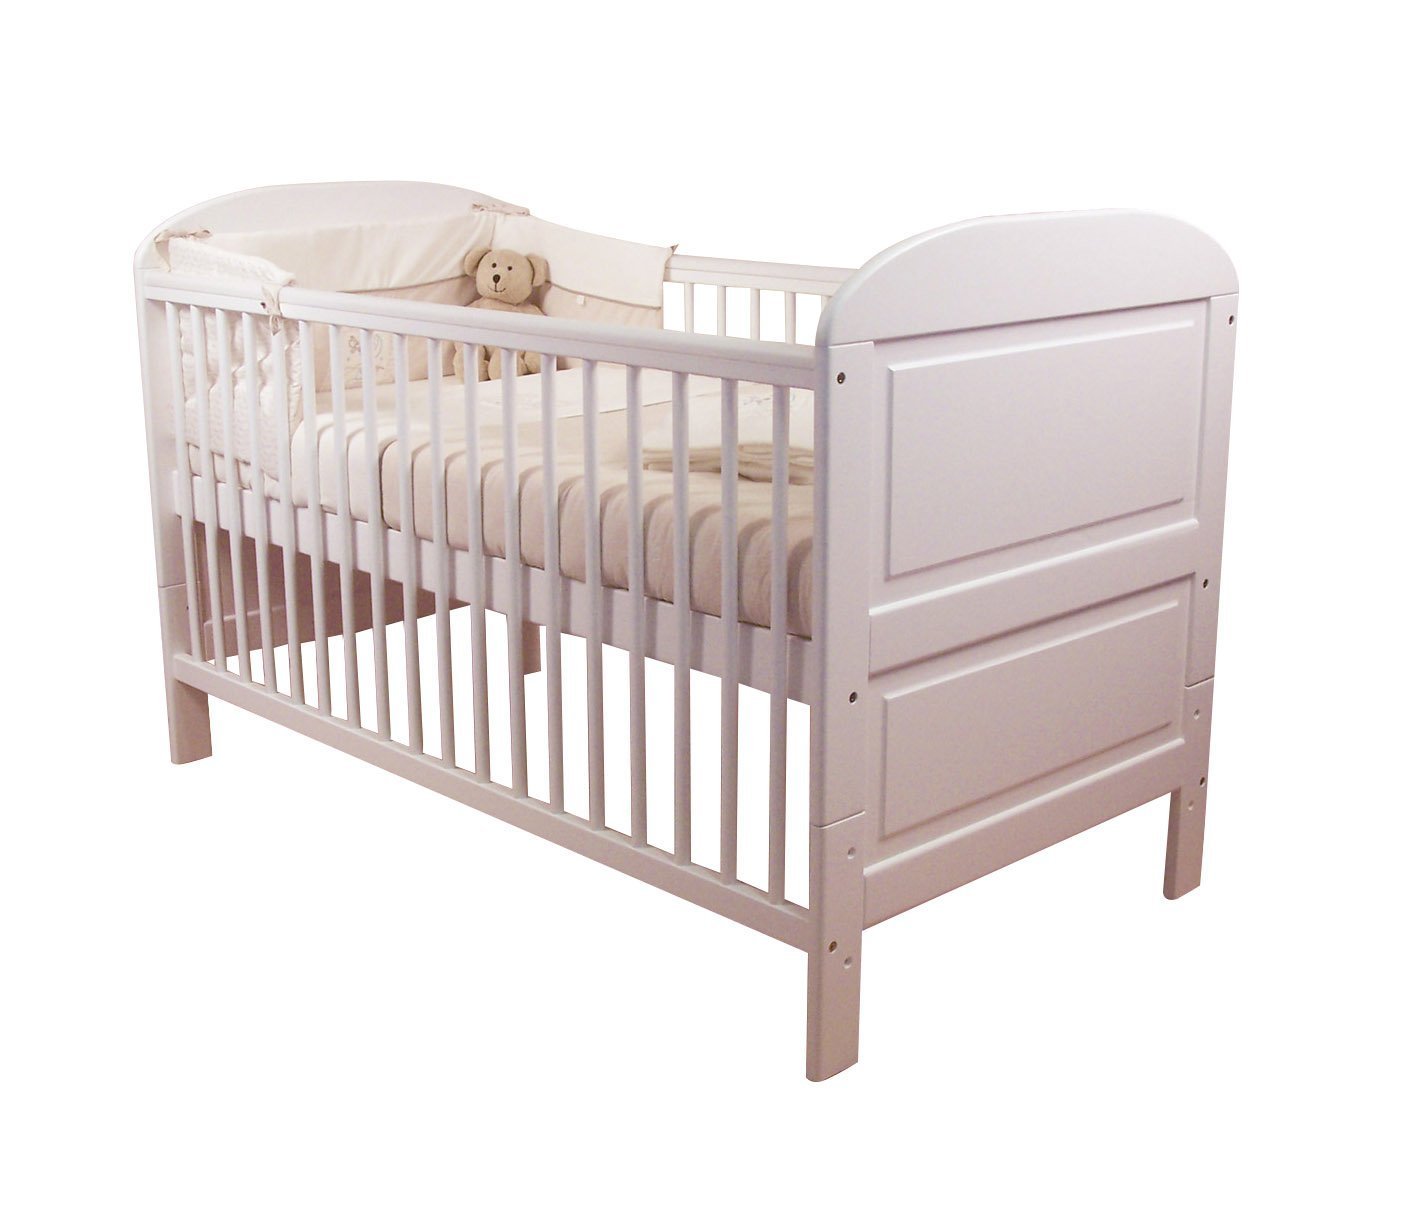 Детская кровать Baby cot Bed. Кроватка Giovanni Baby cot. Giovanni cosleep кроватка. Детская кроватка Sleigh Elite Boori Австралия.